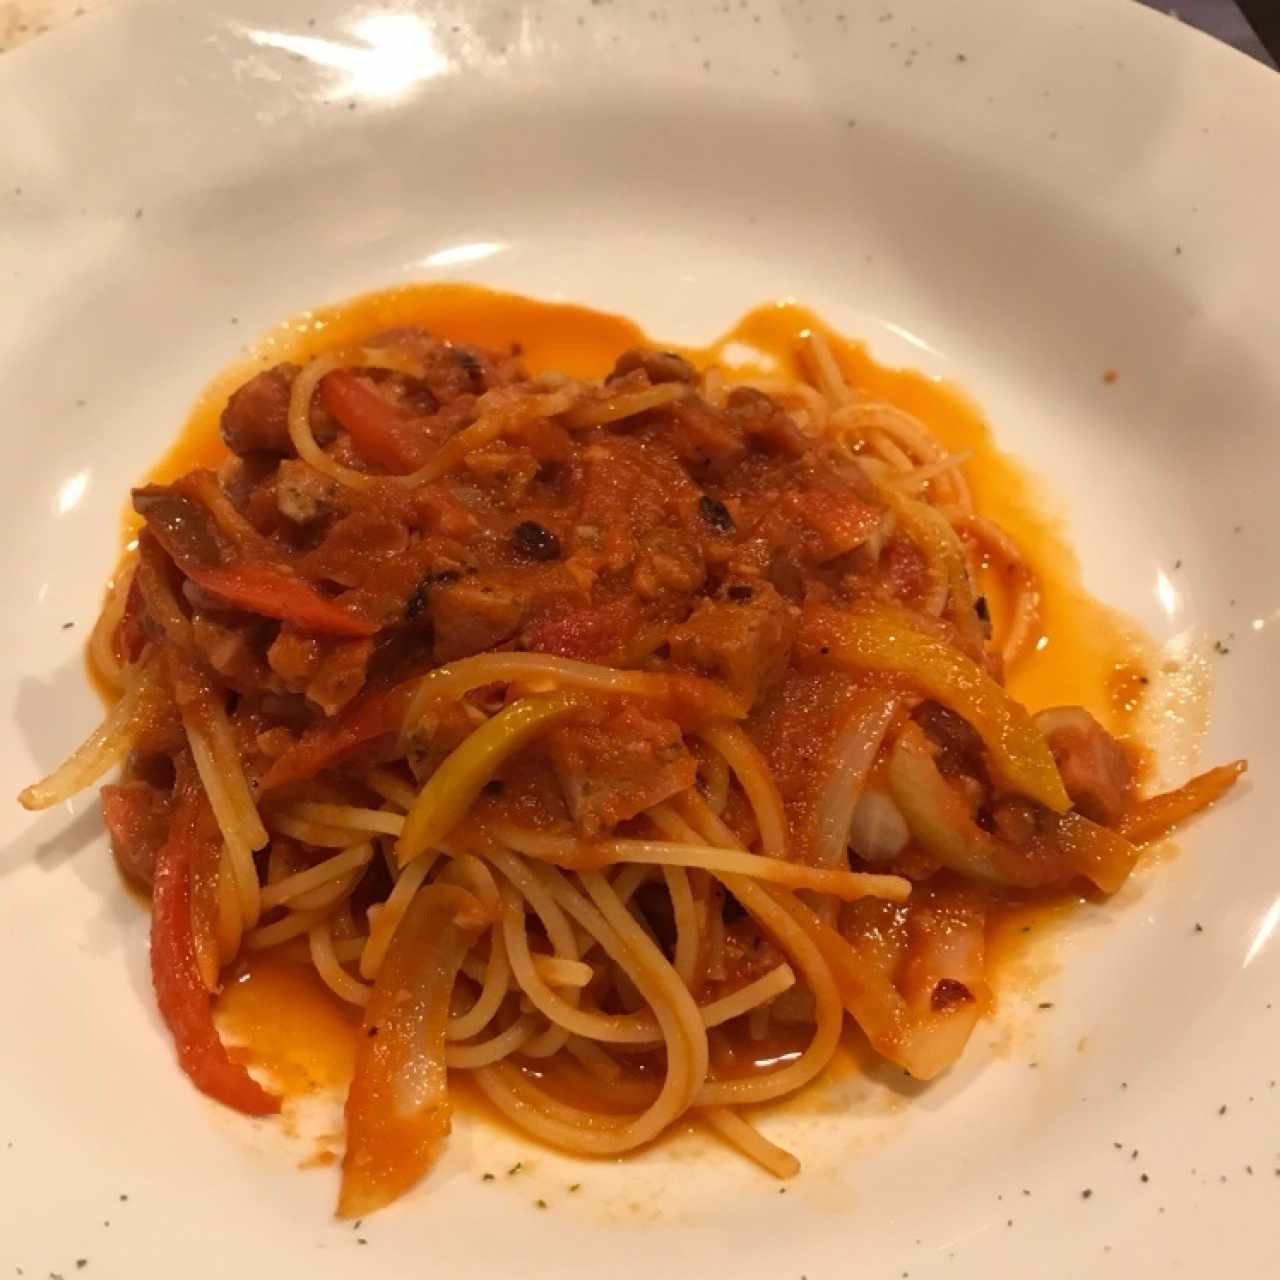 spaghetti con salchicha furiosa